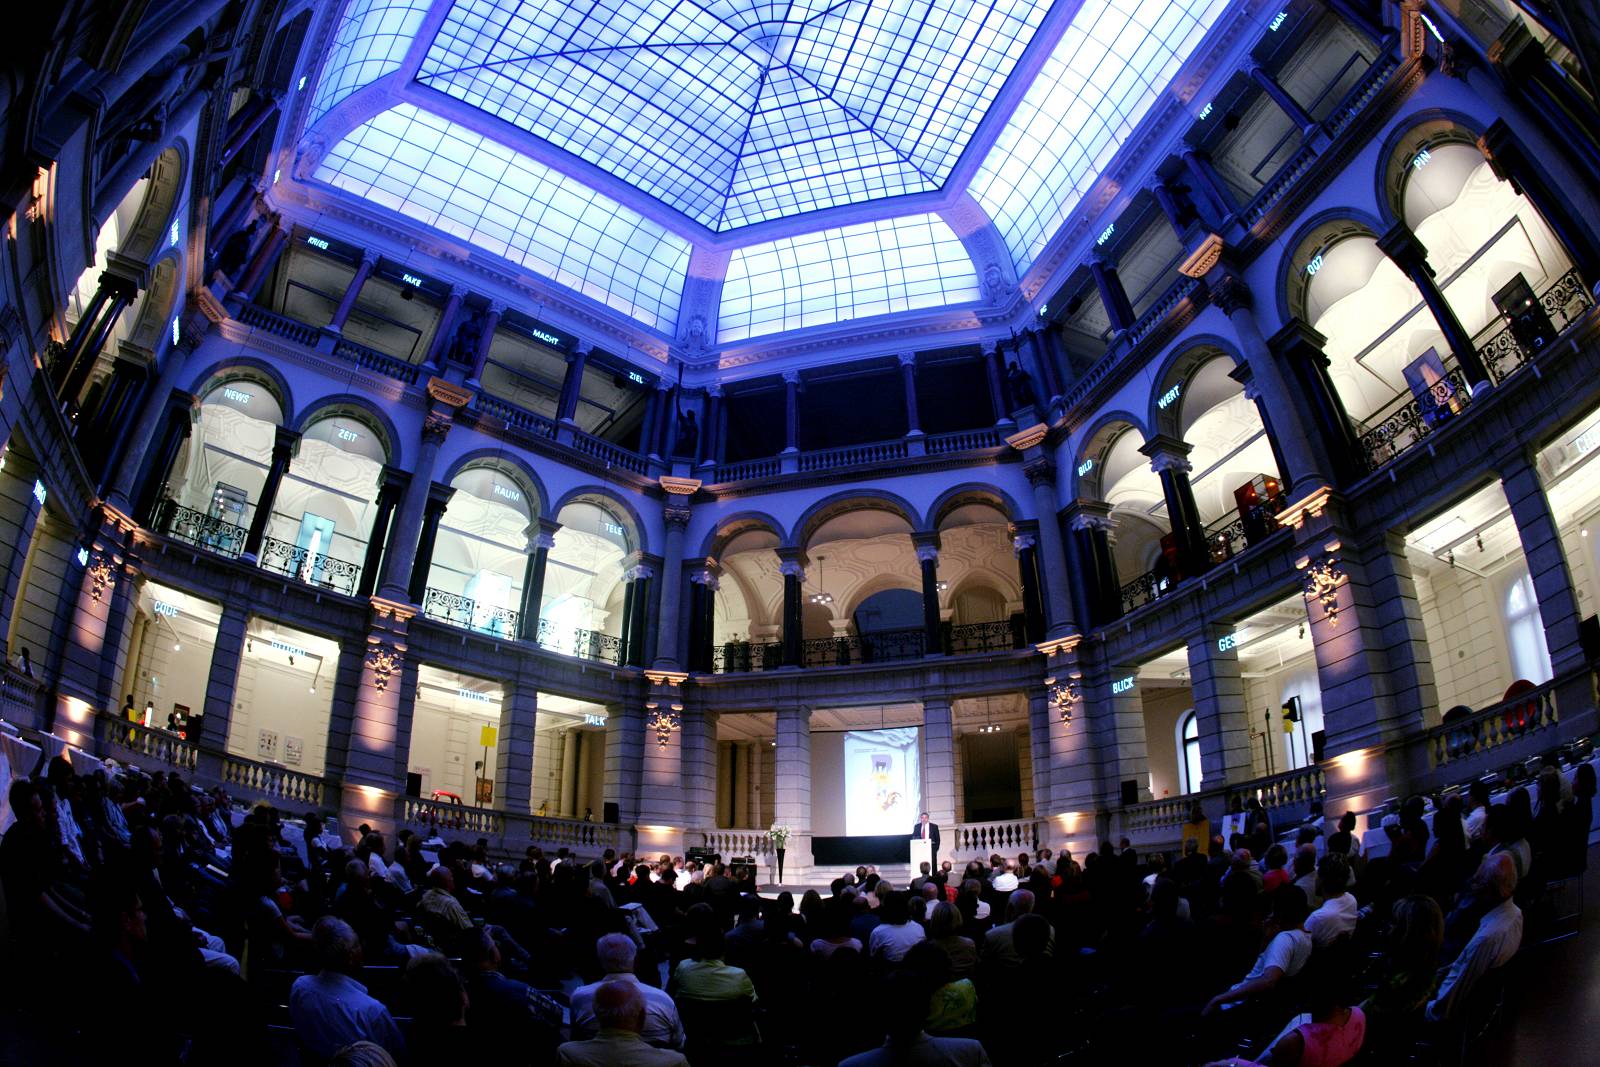 Panoramaaufnahme des Innenhofs im Museum für Kommunikation. Circa 200 Menschen sitzen im Publikum und gucken zur Bühne